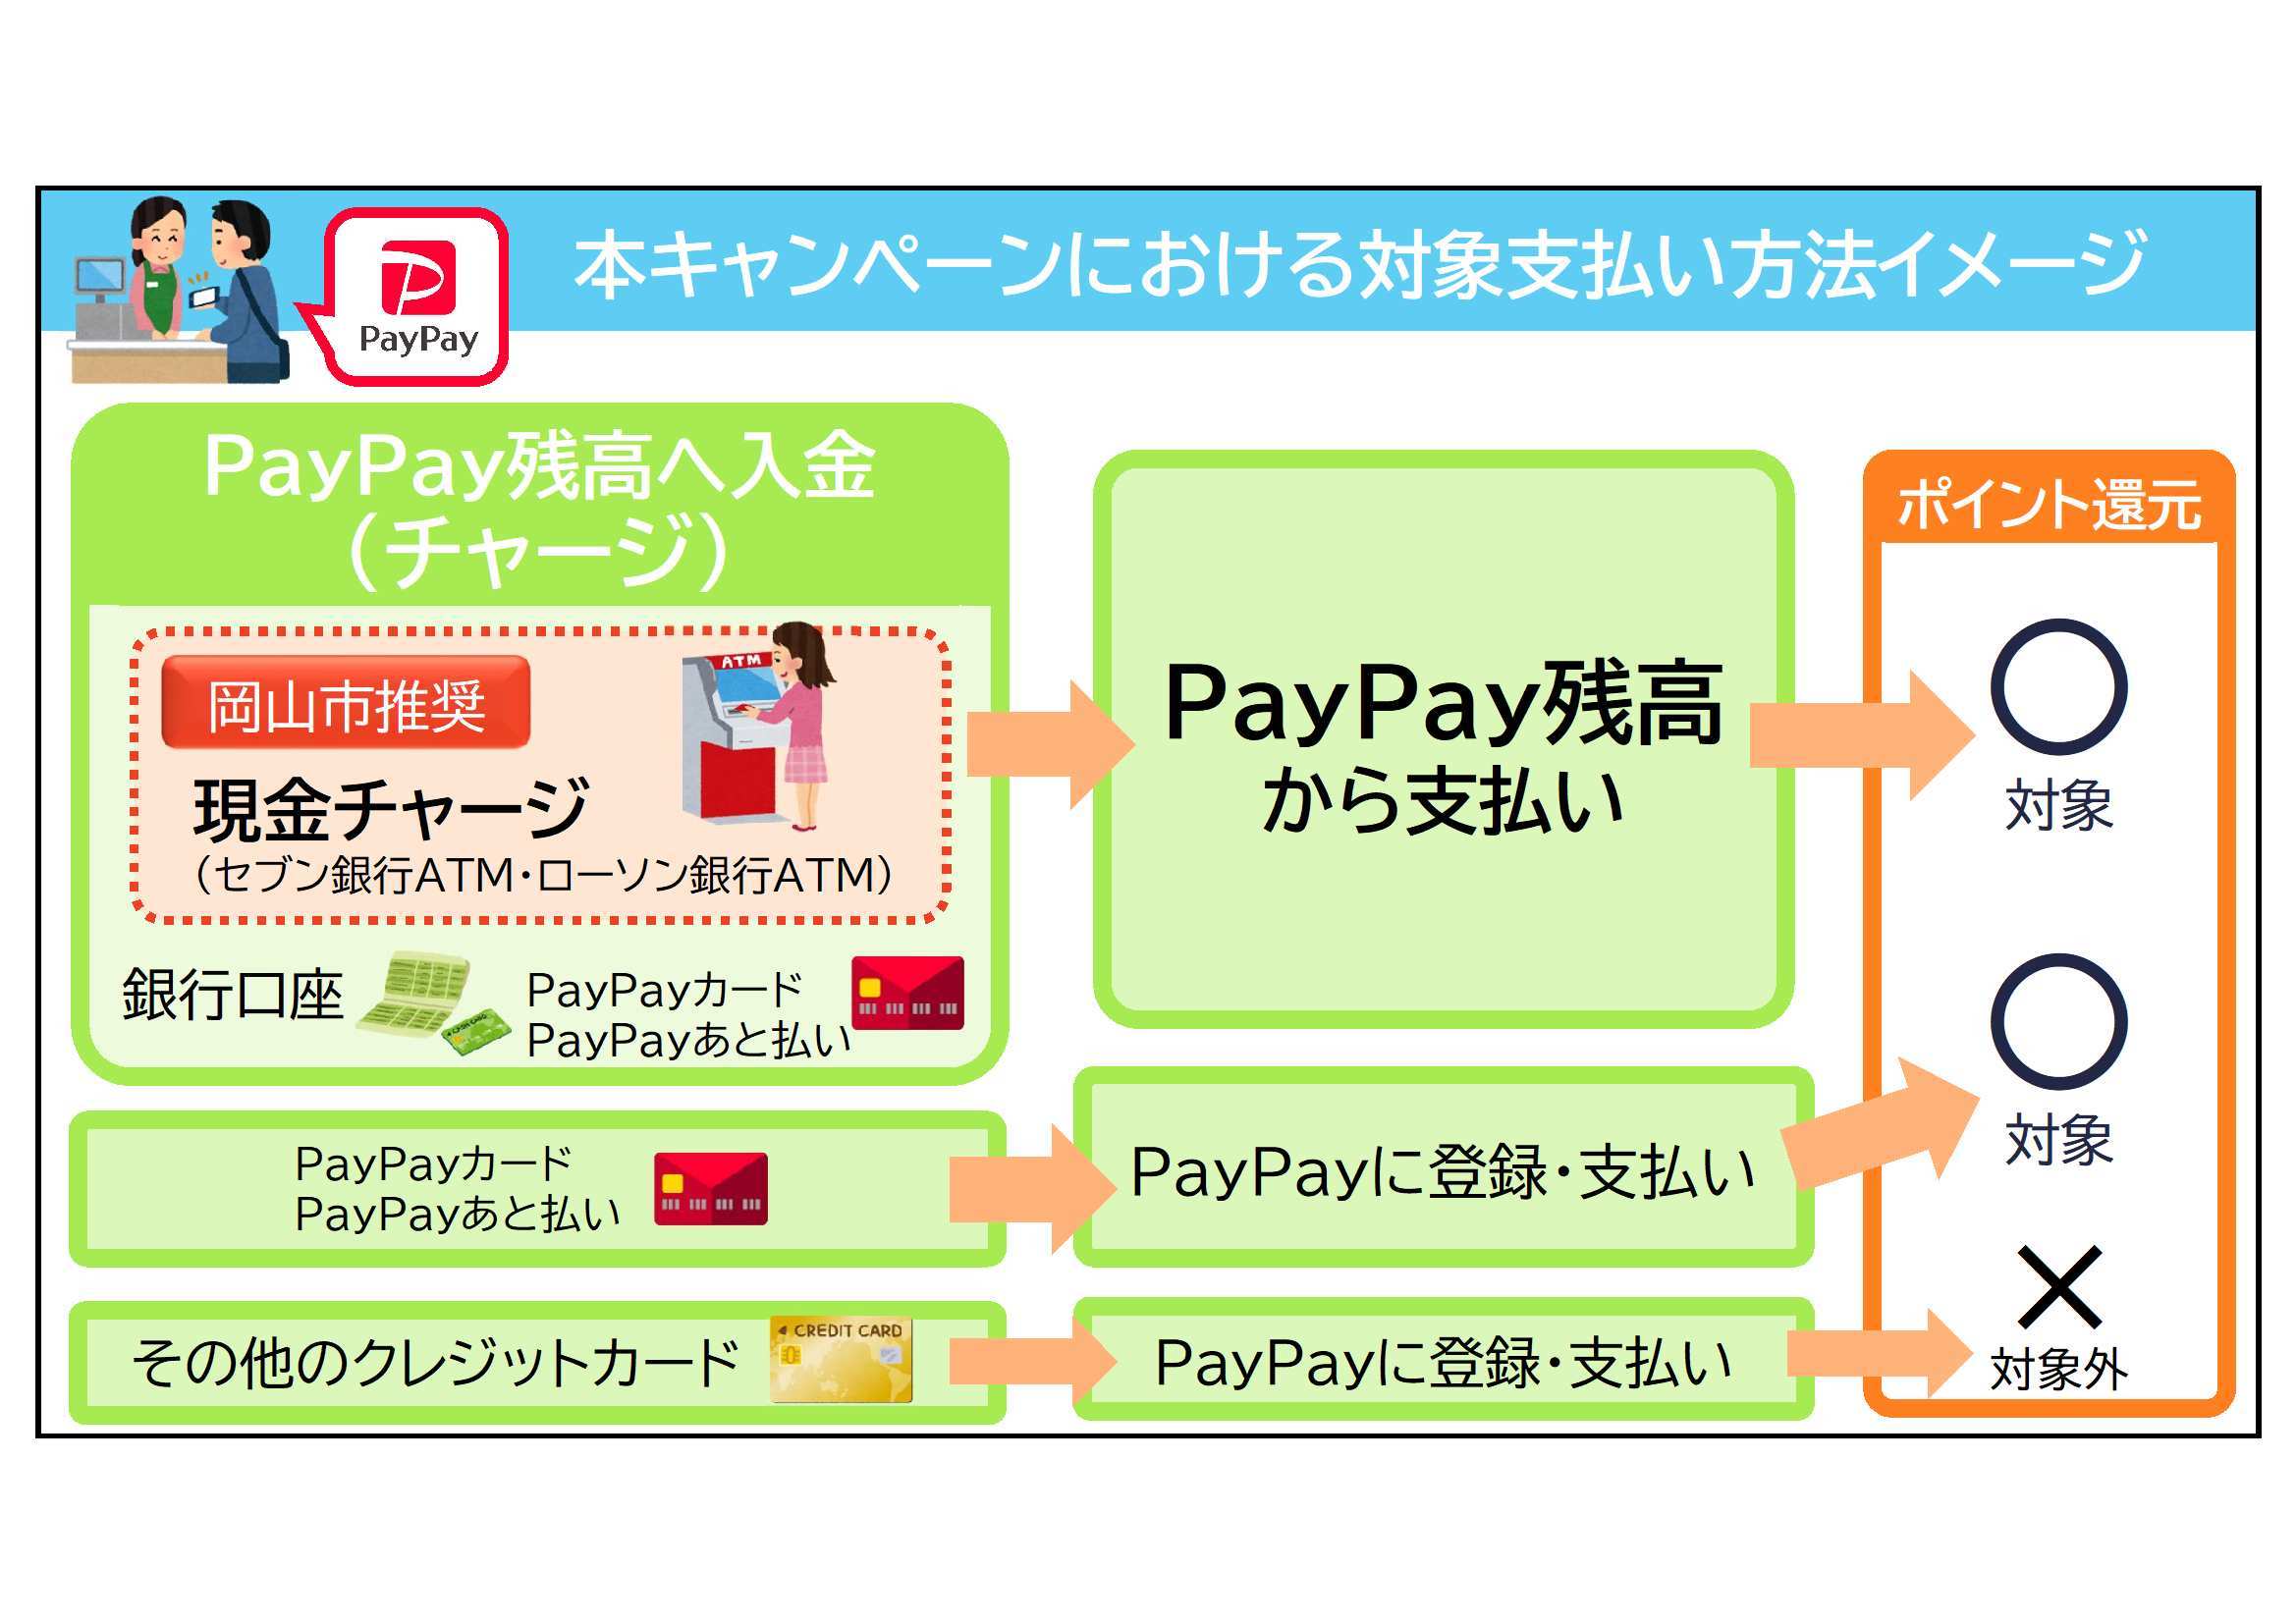 PayPay支払方法説明資料